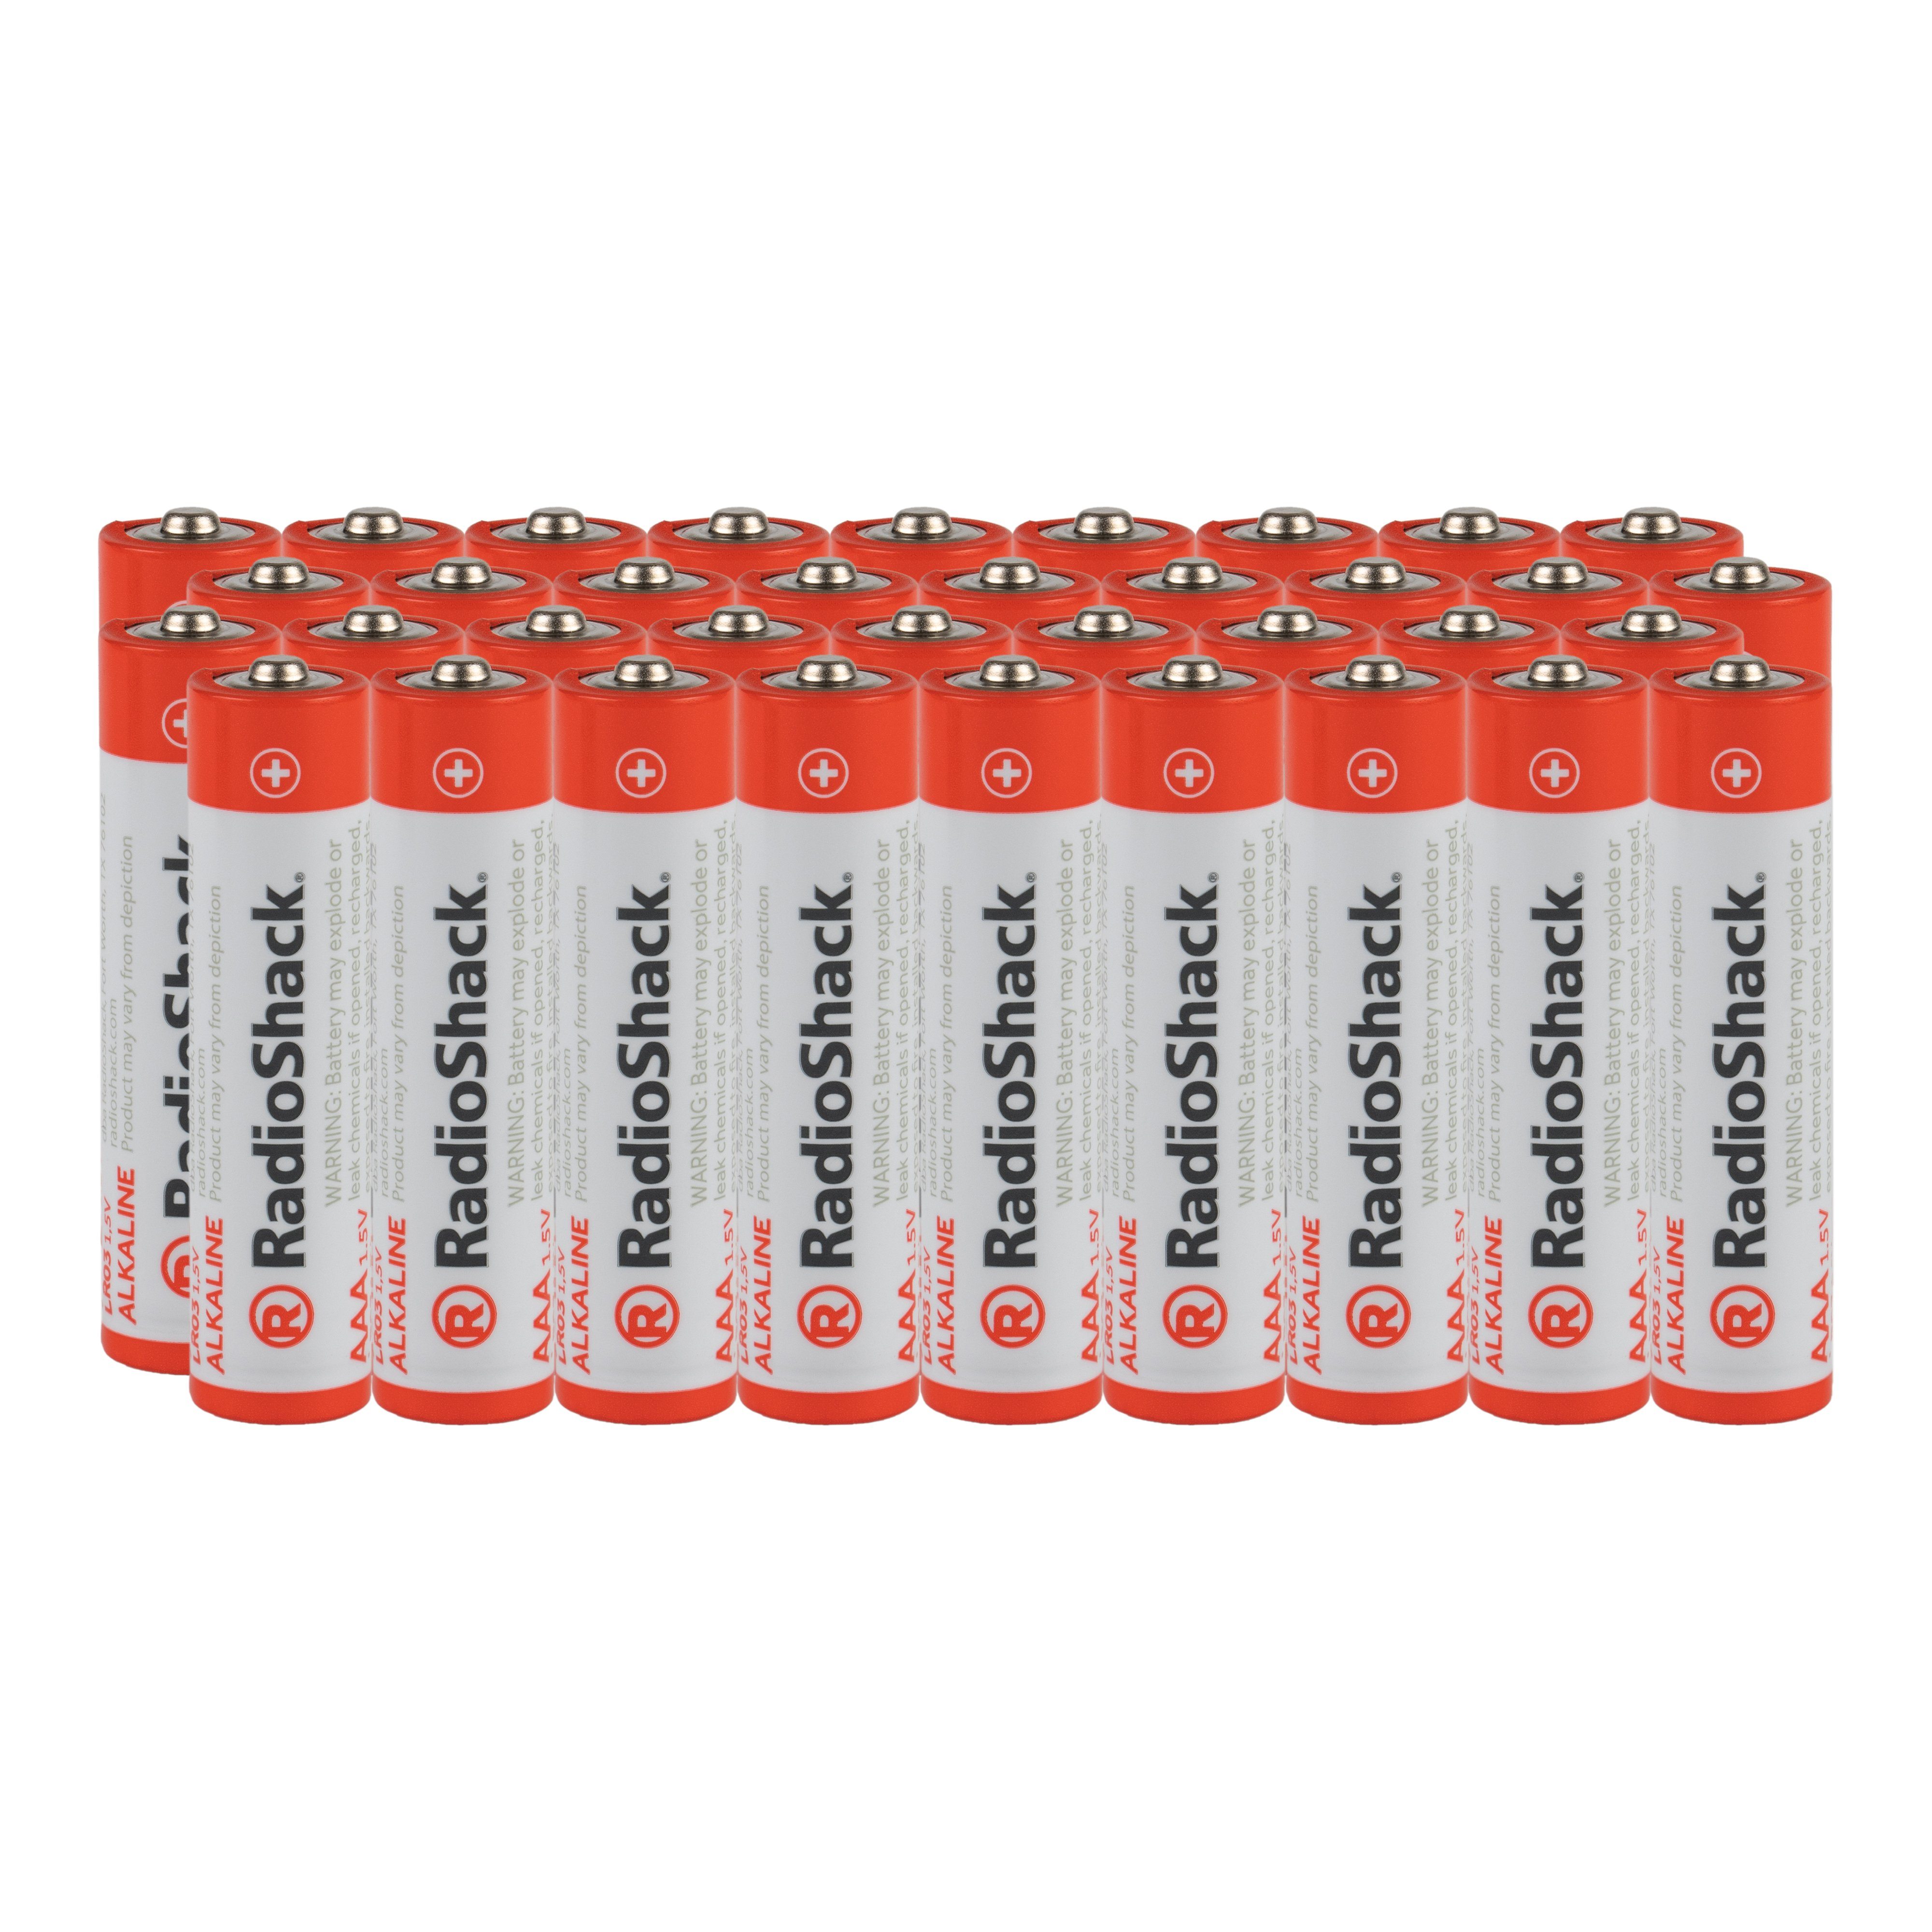 Image of AAA Alkaline Batteries 36-Pack